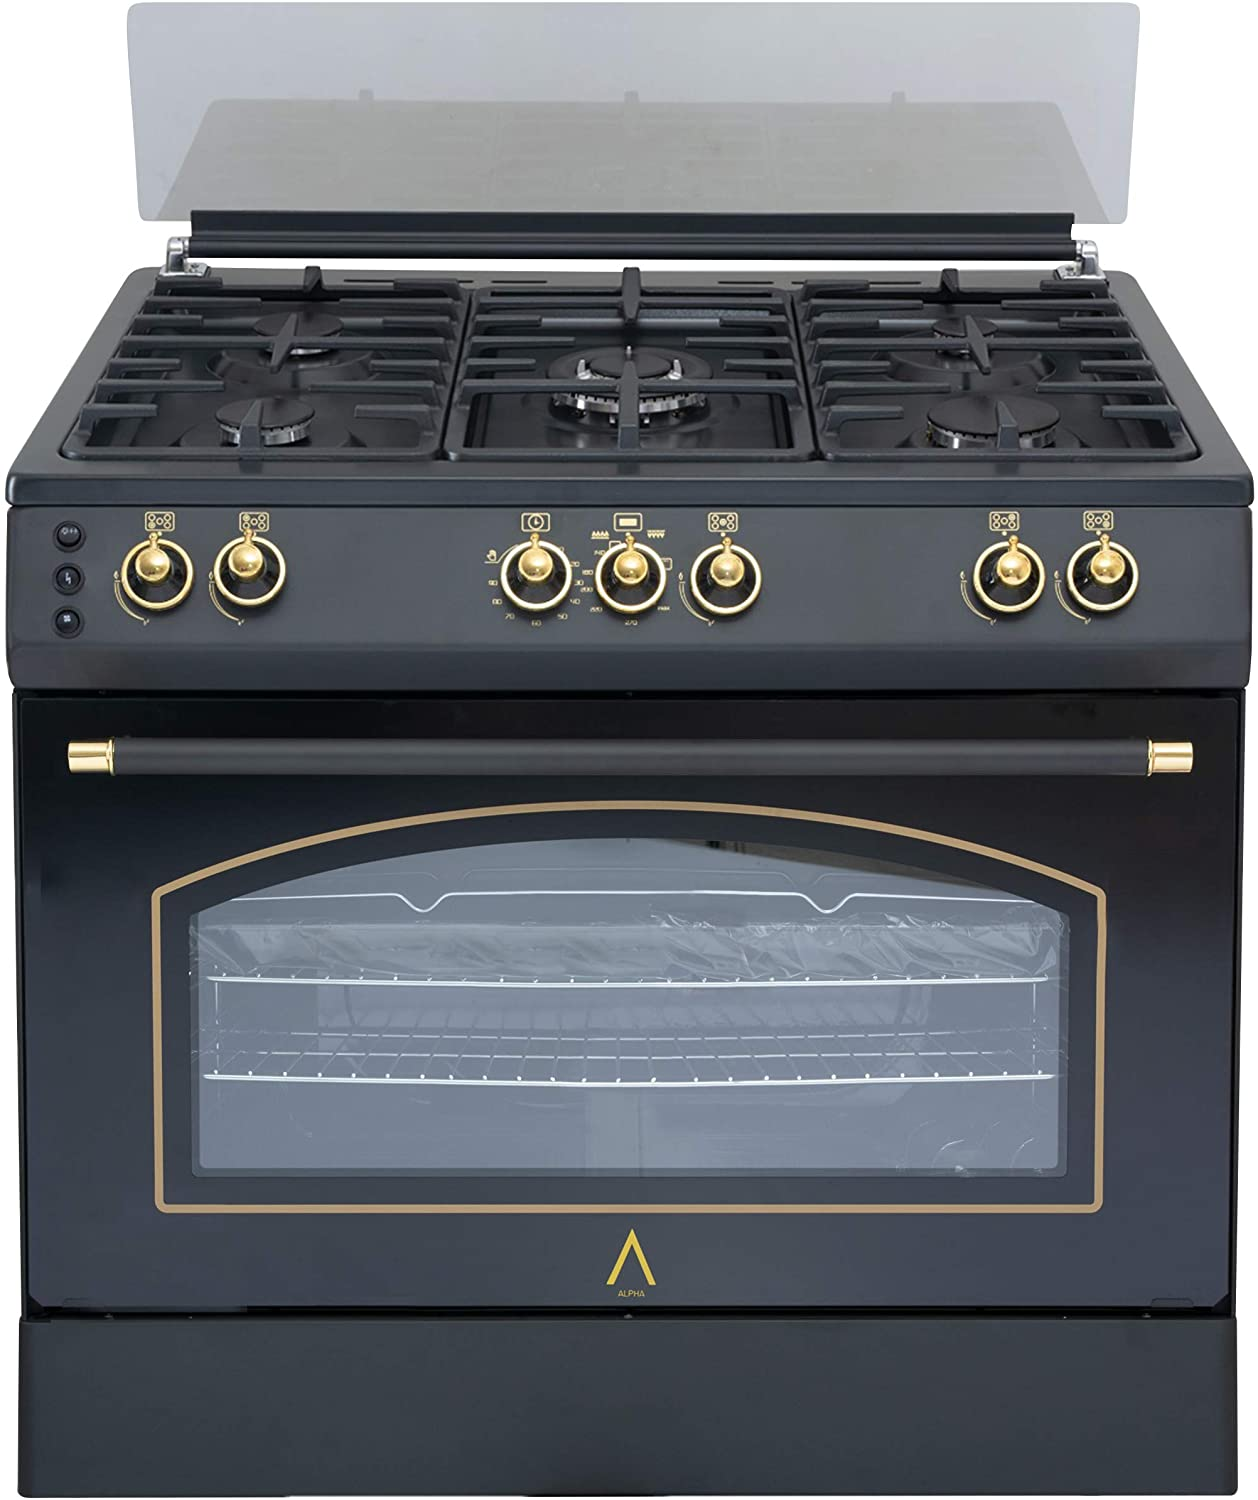 Alpha Cocina De gas vulcano gold90 rustica. encendido y temporizador horno. alta gama oro 101 esmalte limpiar 90 cm vg90 butano